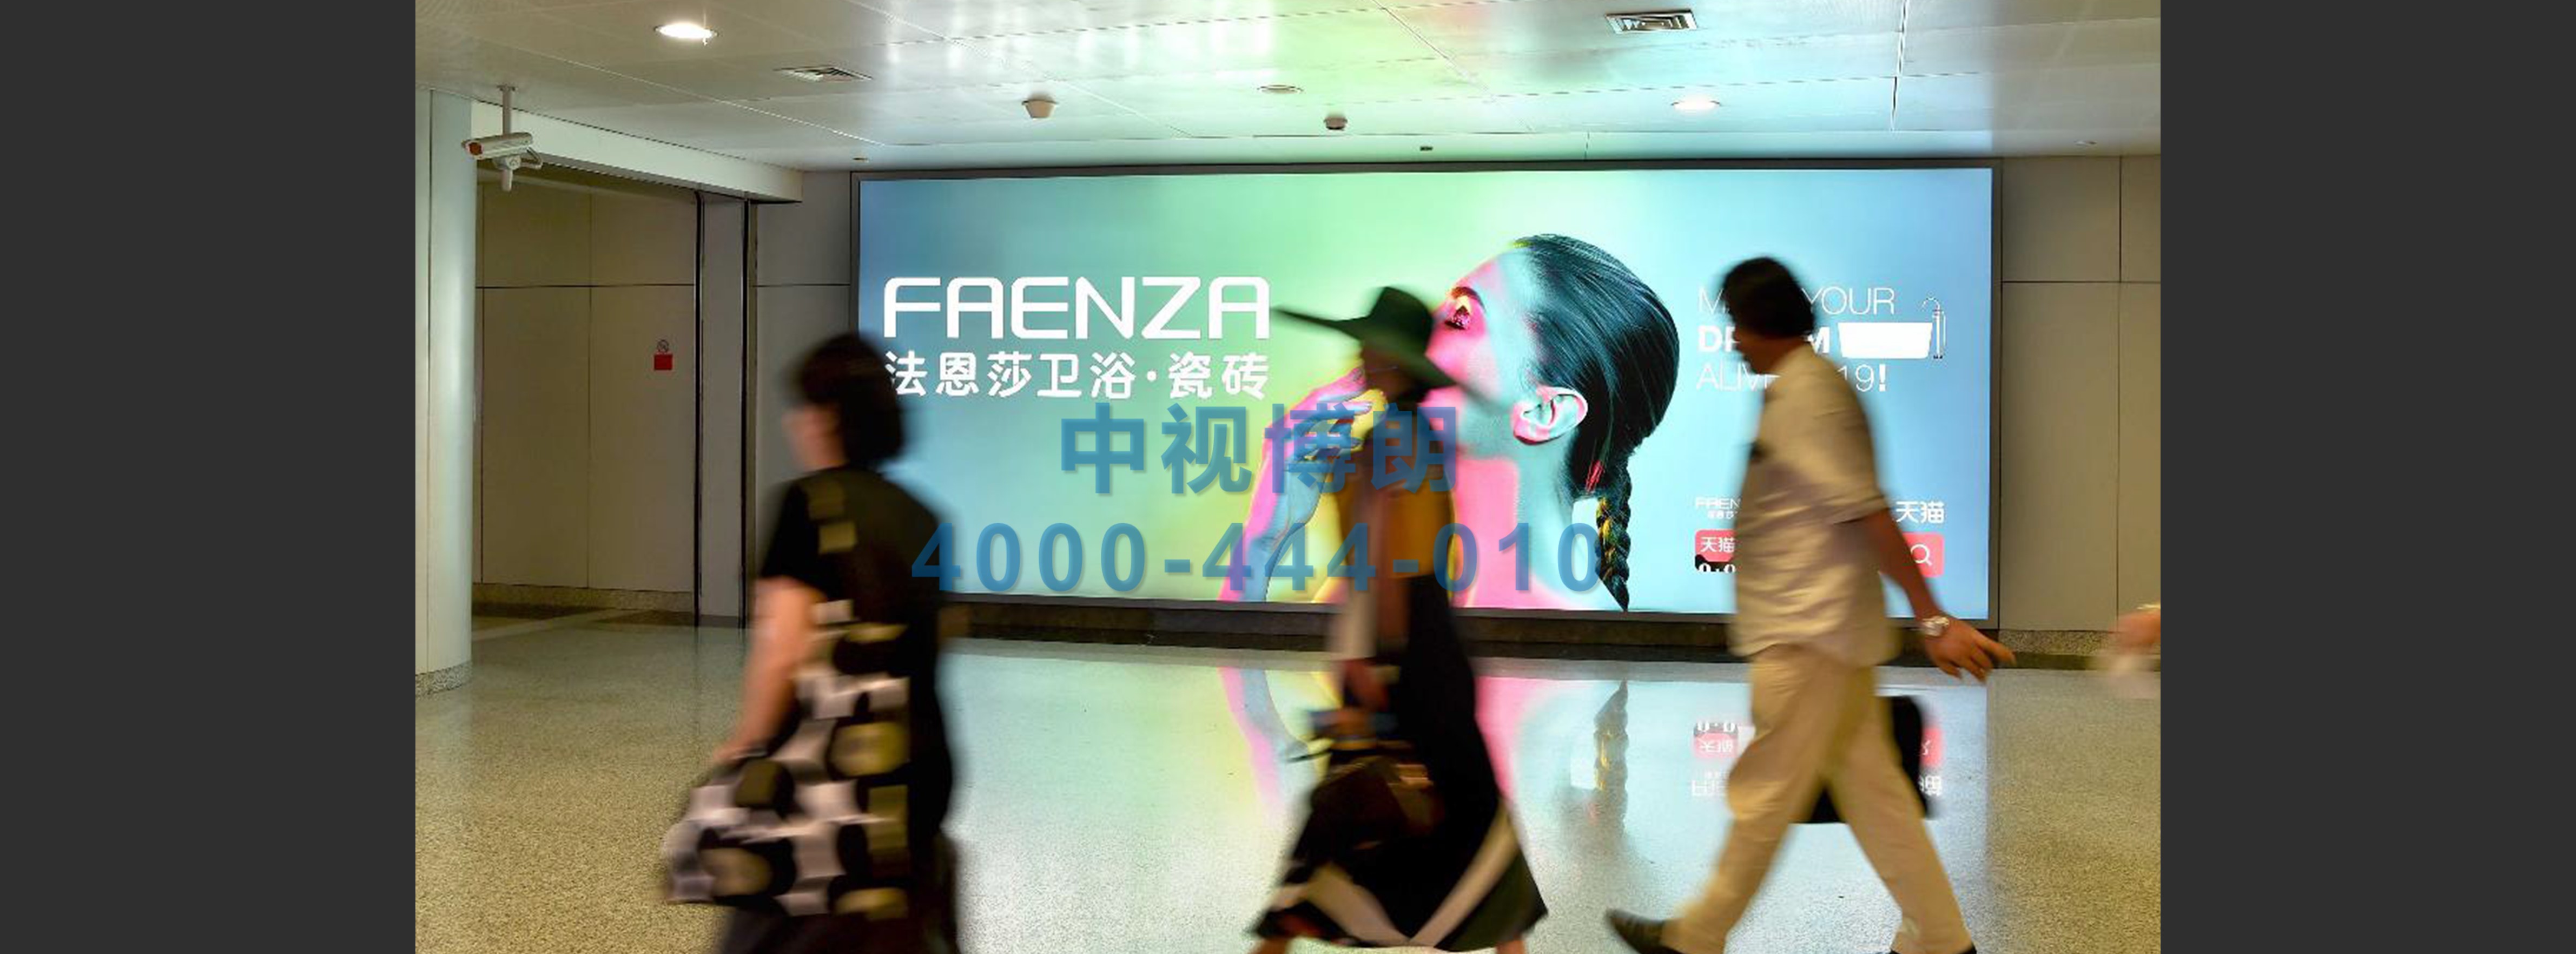 北京首都机场广告-T2国内出发走廊成对墙面灯箱